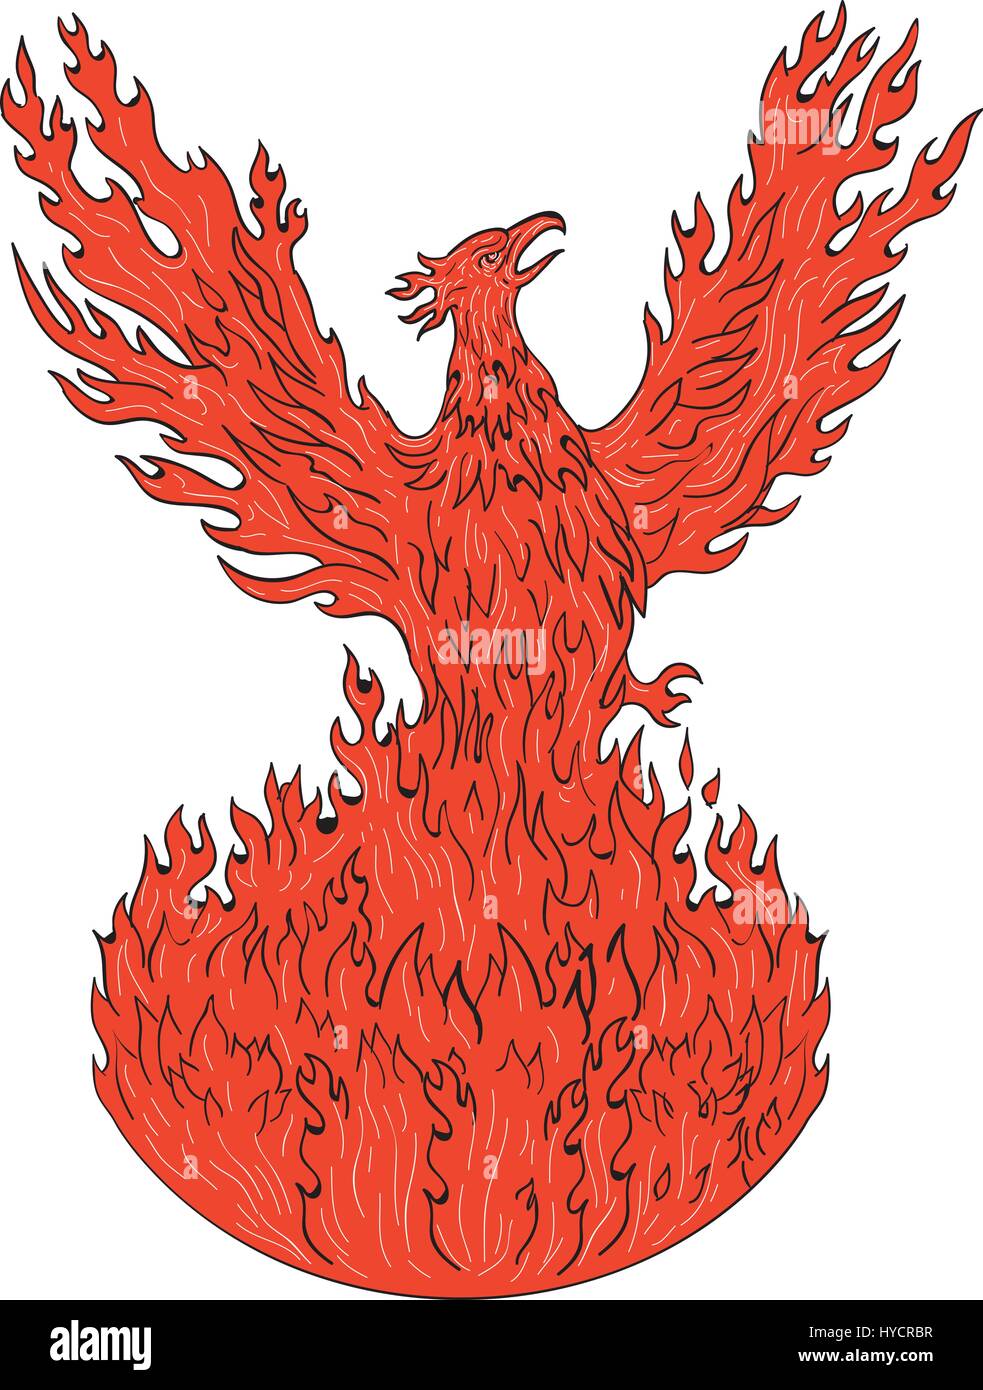 Zeichnung Skizze Stil Abbildung eines Phönix erhebt sich aus feurigen Flammen, set Flügel angehoben für Flug auf isolierten weißen Hintergrund. Stock Vektor